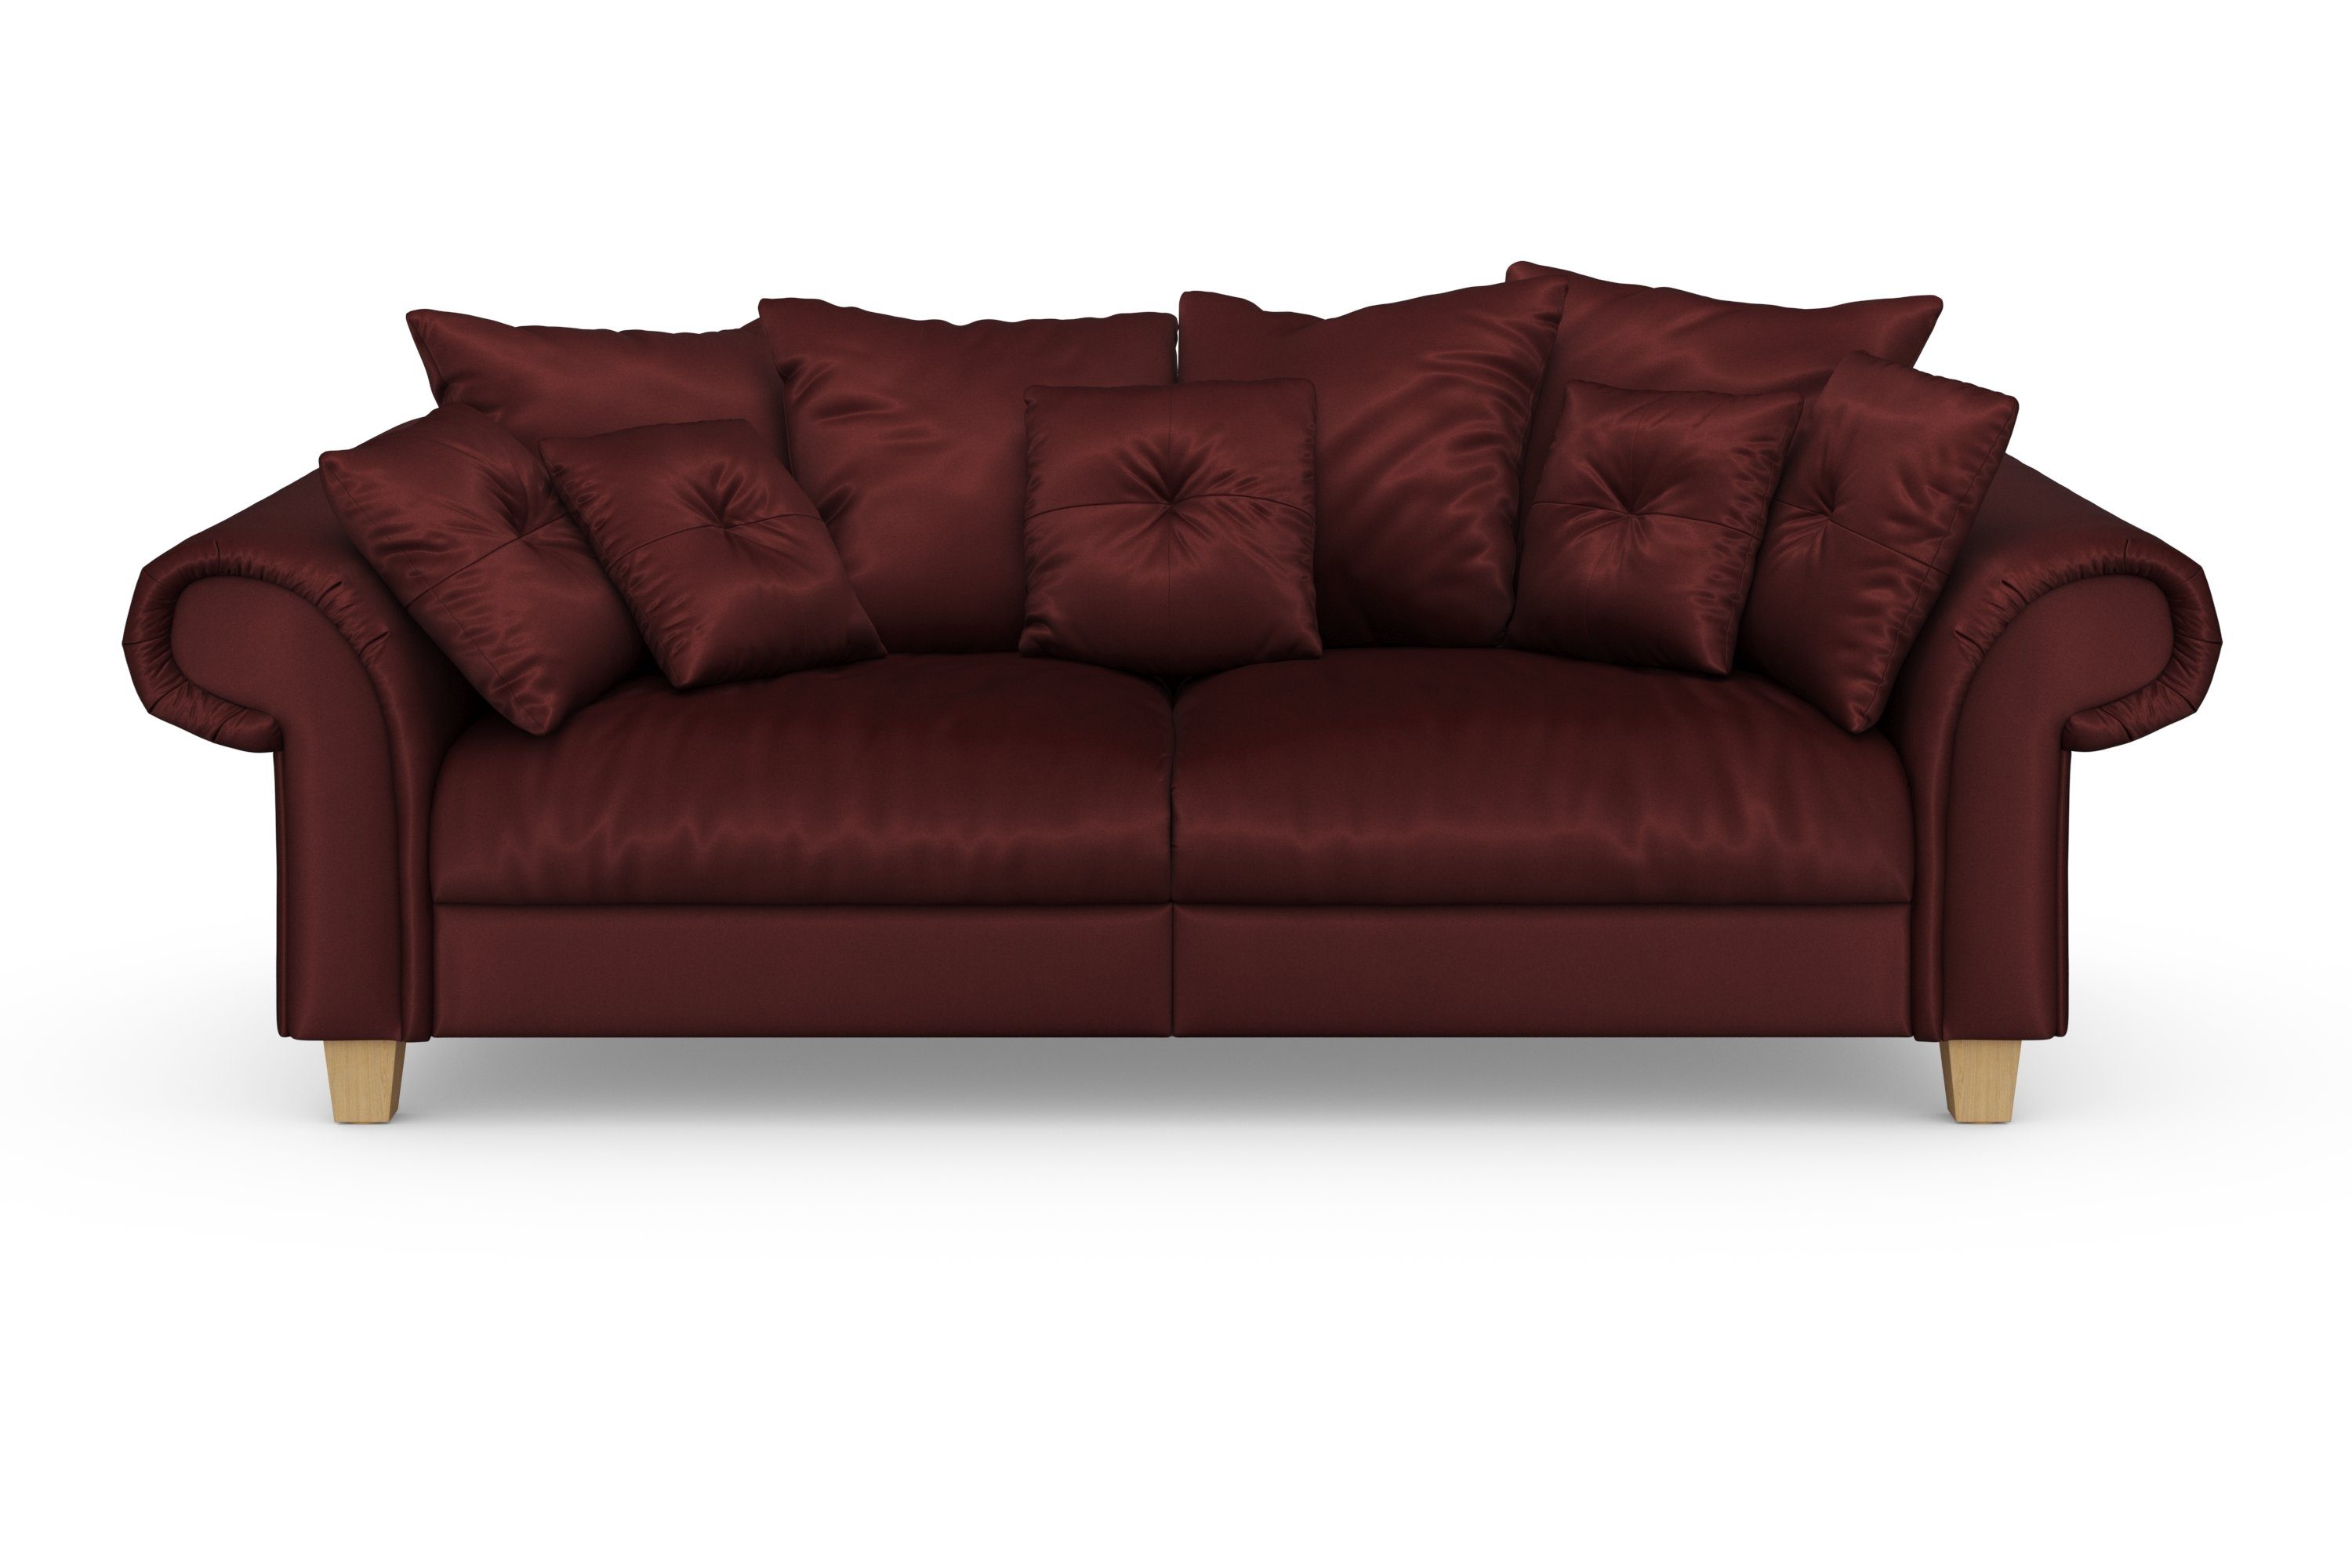 und mit 2 Big-Sofa weichem Design, Teile, zeitlosem viele affaire Megasofa, Queenie Kissen kuschelige Sitzkomfort Home